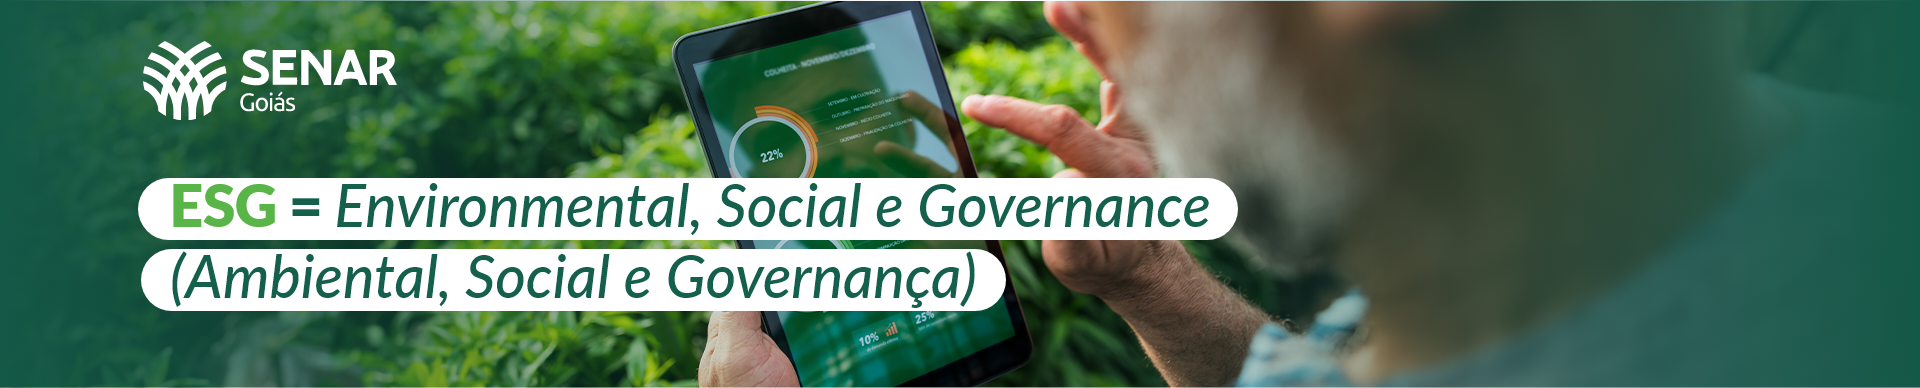 Banner informativo destacando a importância do ESG - Ambiental, Social e Governança para práticas sustentáveis. Logotipo do Senar-GO visível